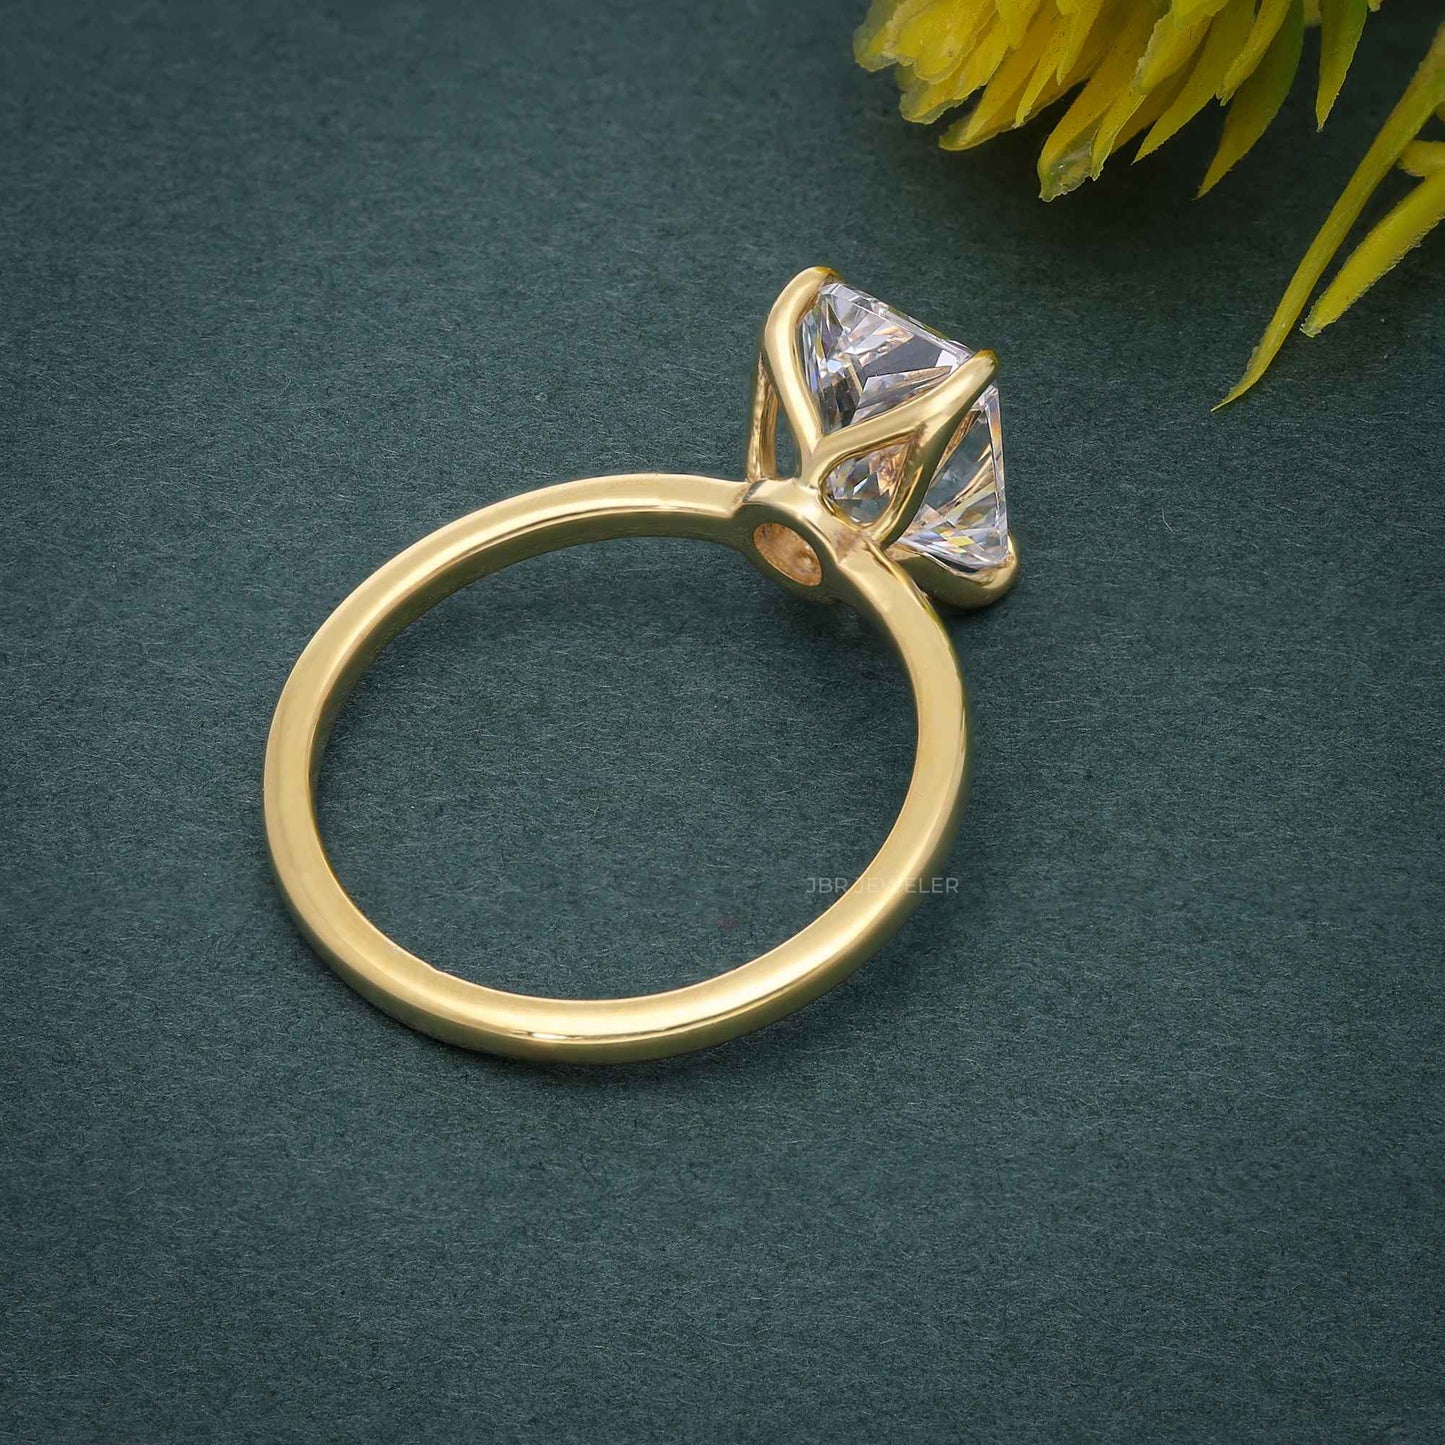 Petal Radiant Moissanite Diamond Engagement Ring